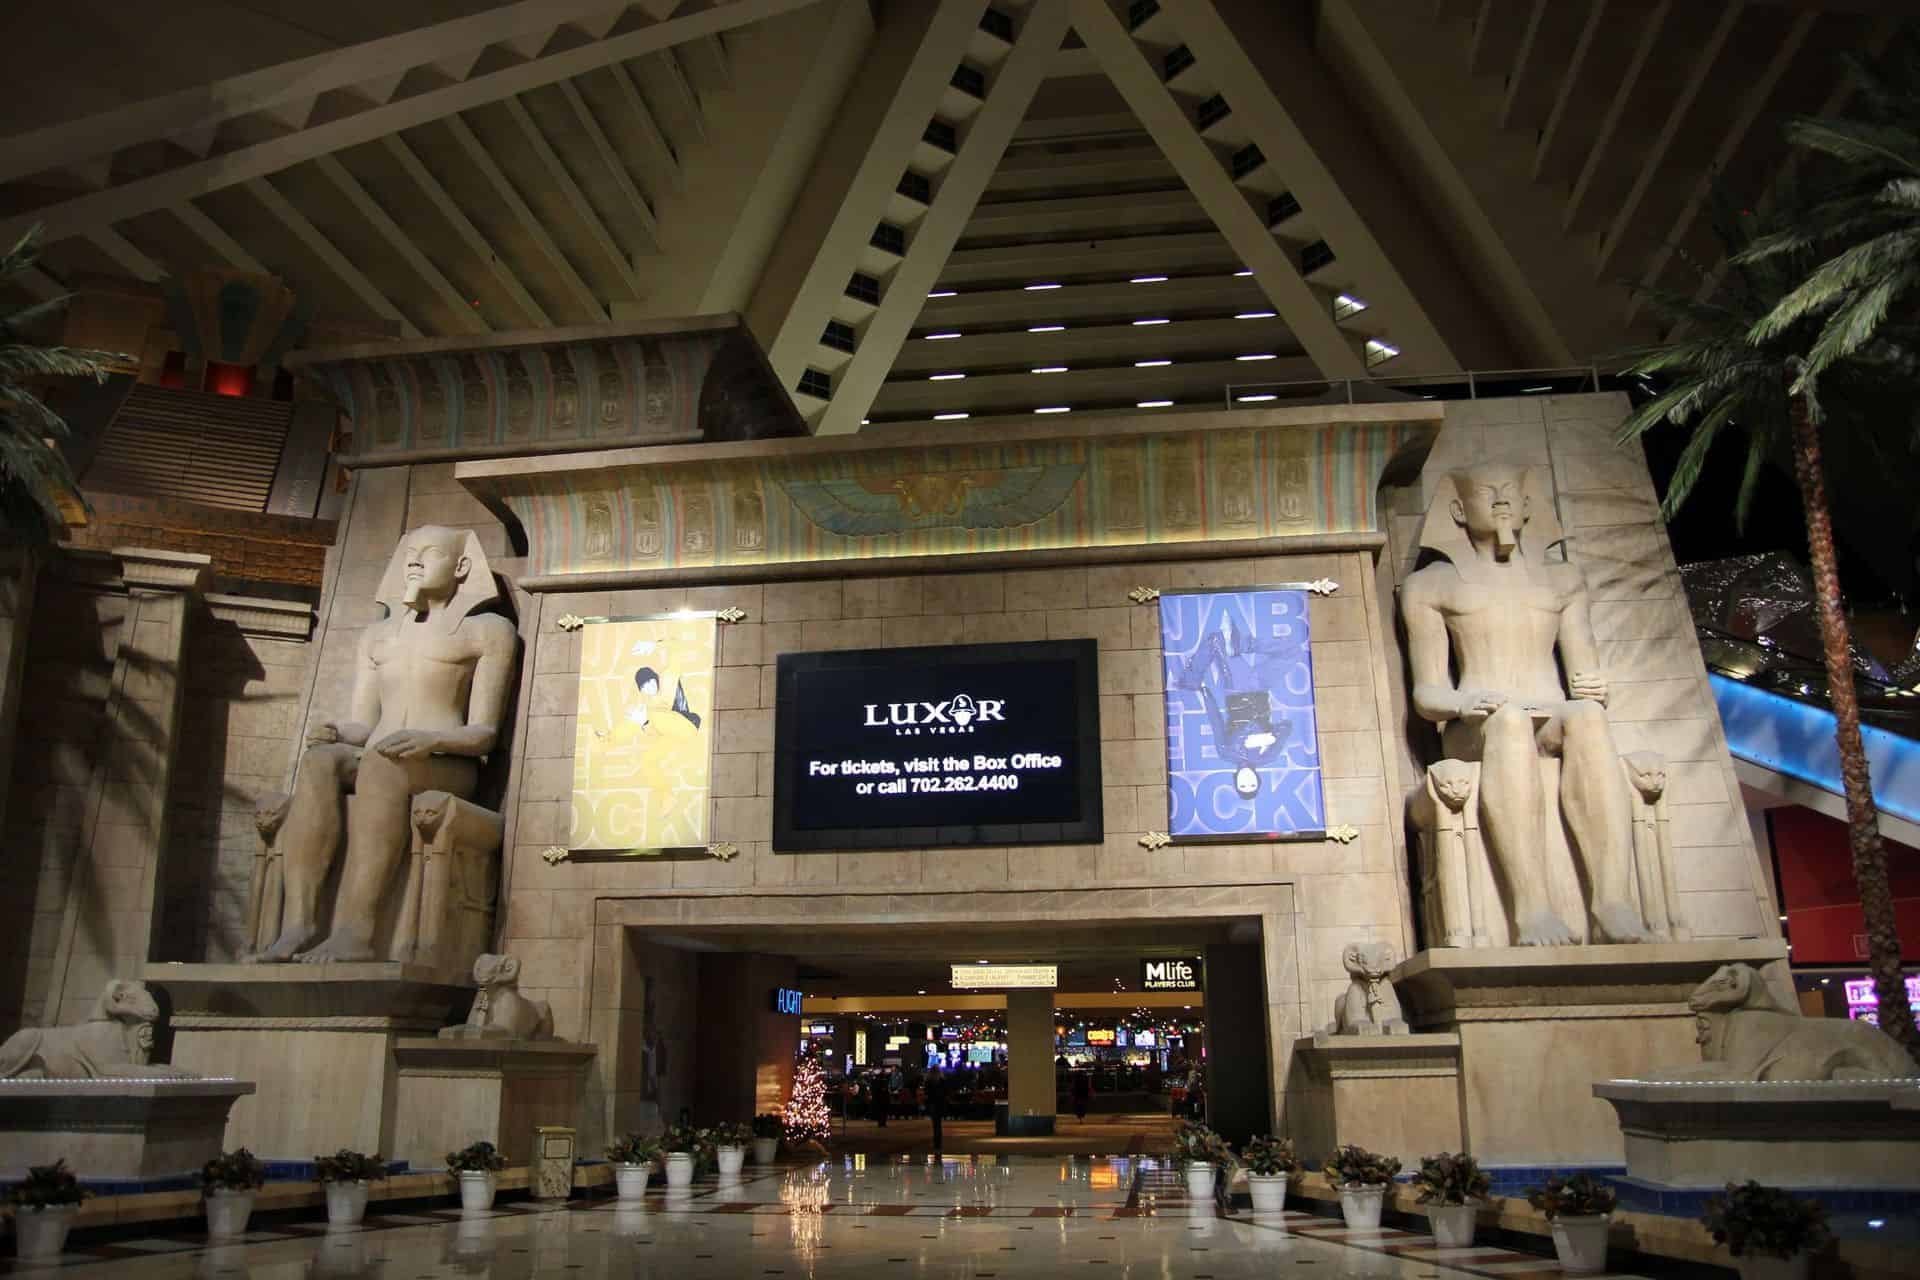 Luxor Hotel & Casino - Rooms, Suites, Restaurants & Pyramid, Las Vegas